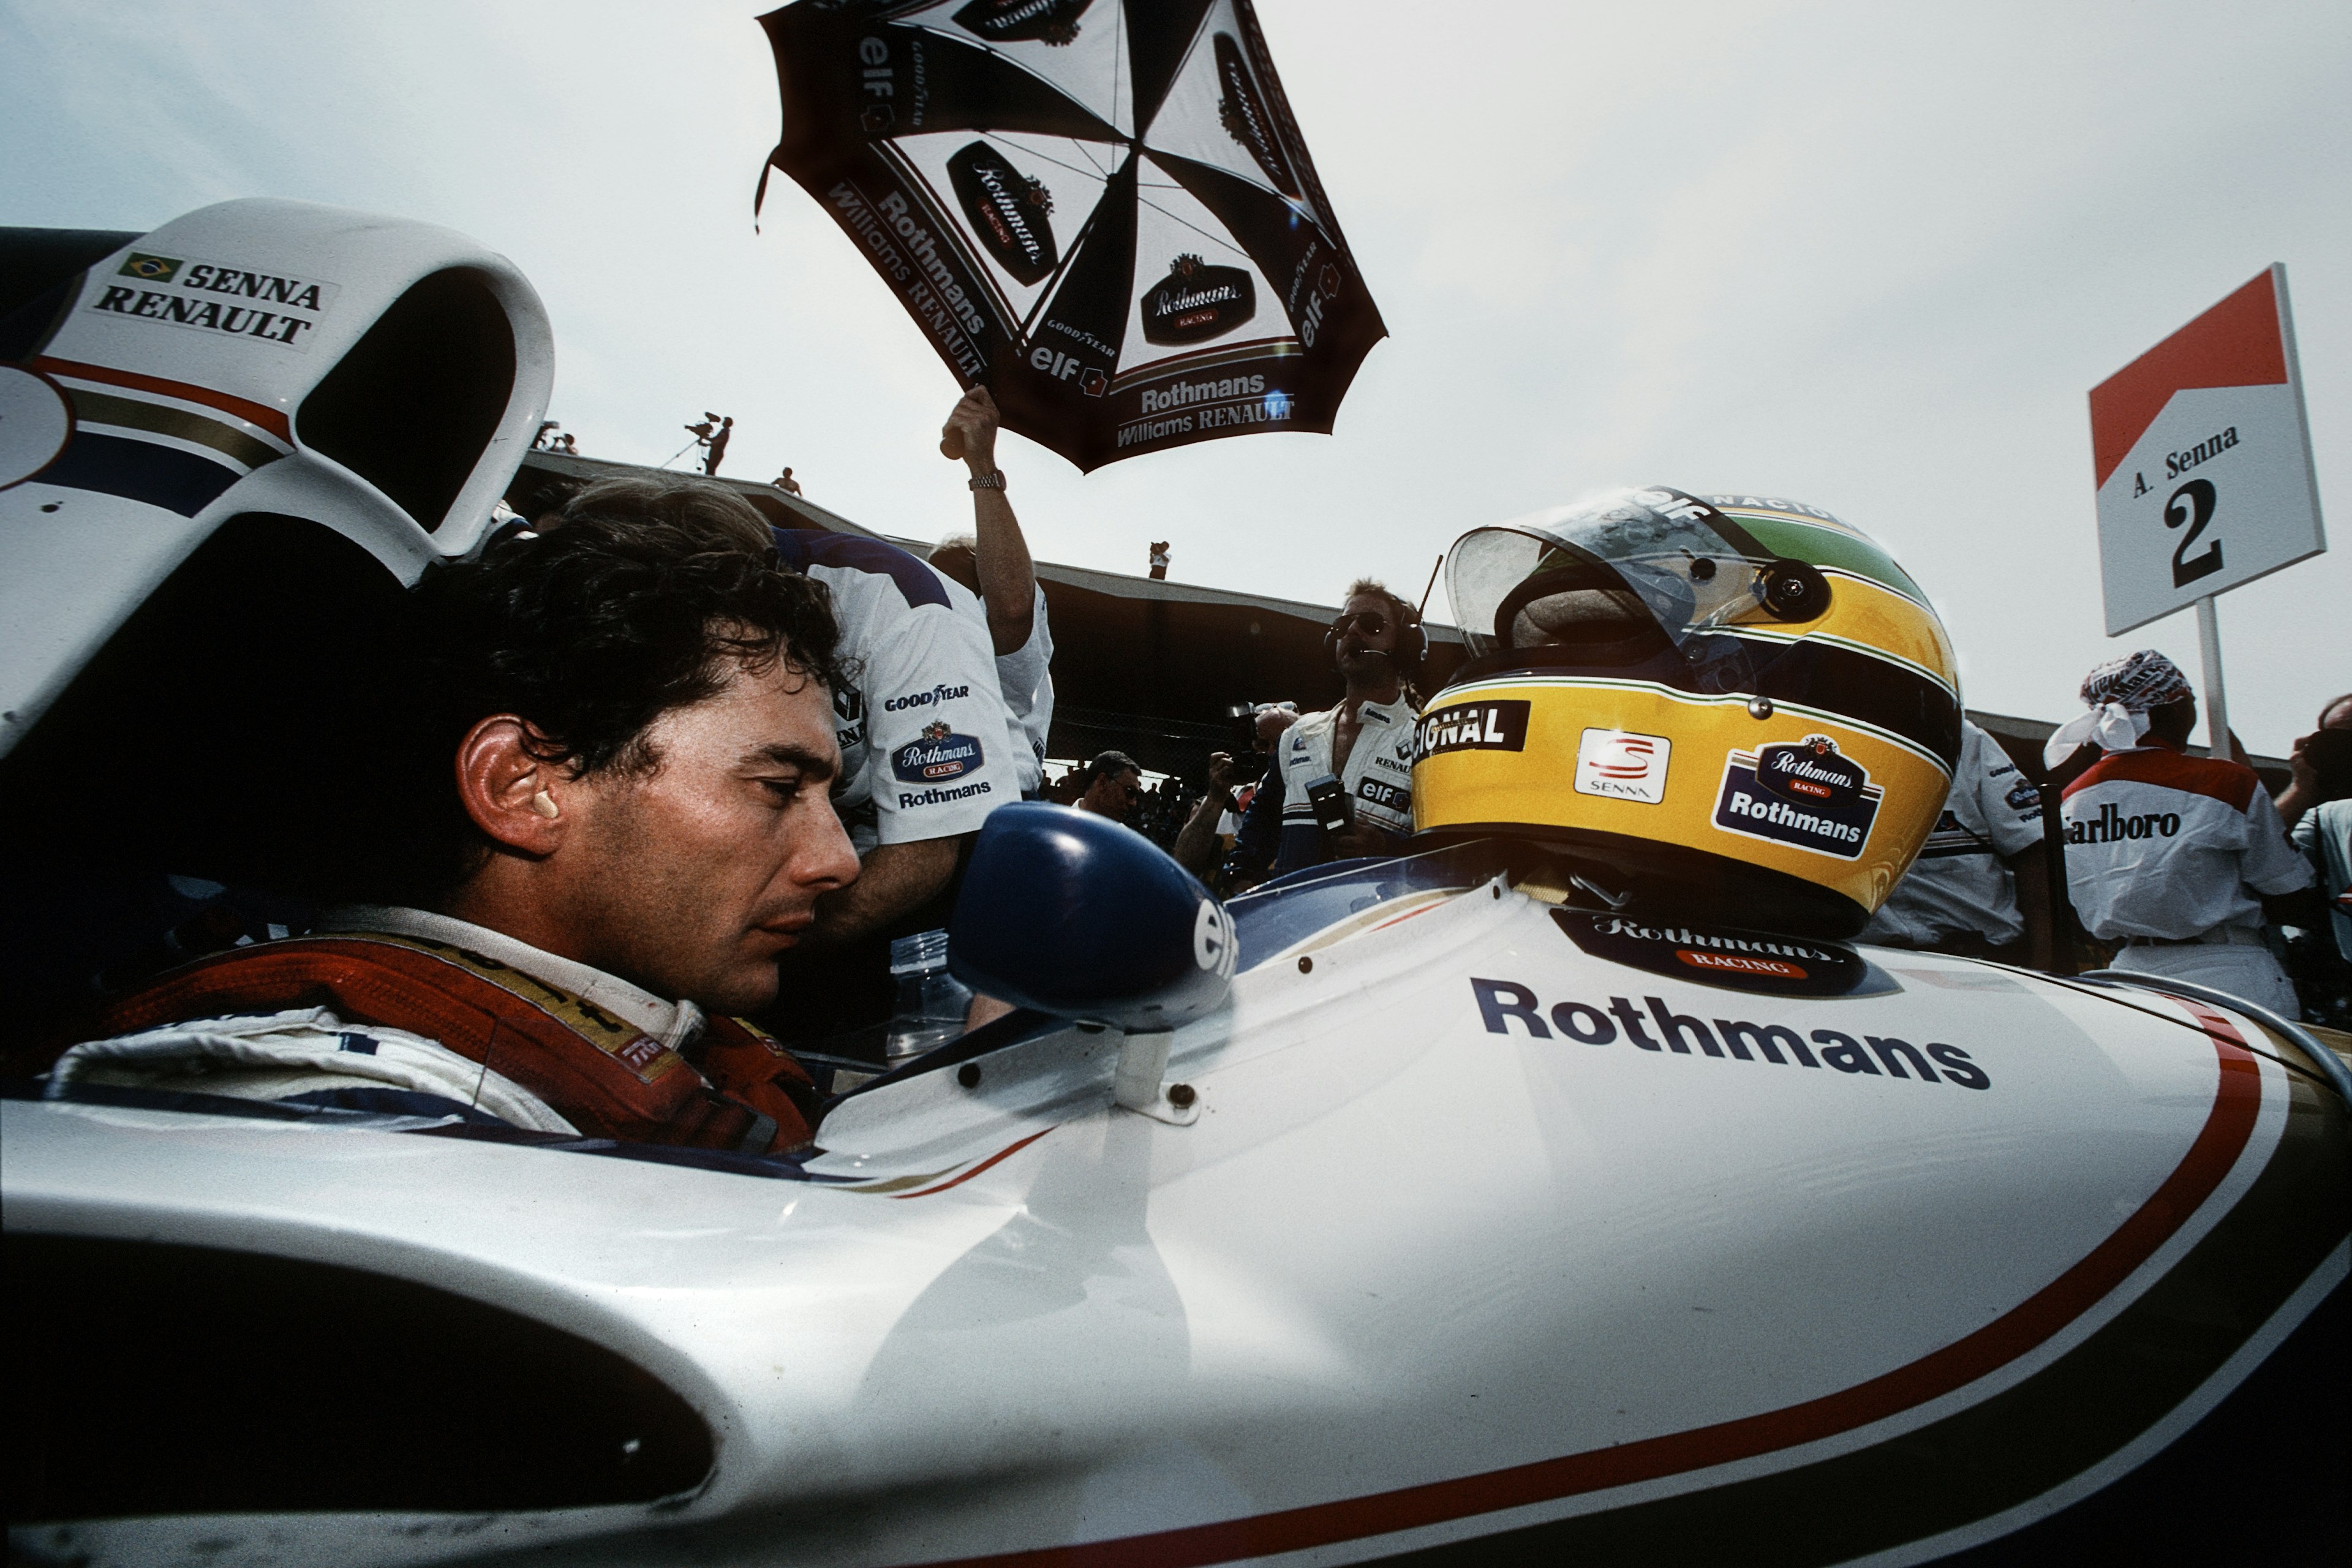 Ayrton Senna, Grand Prix Of San Marino